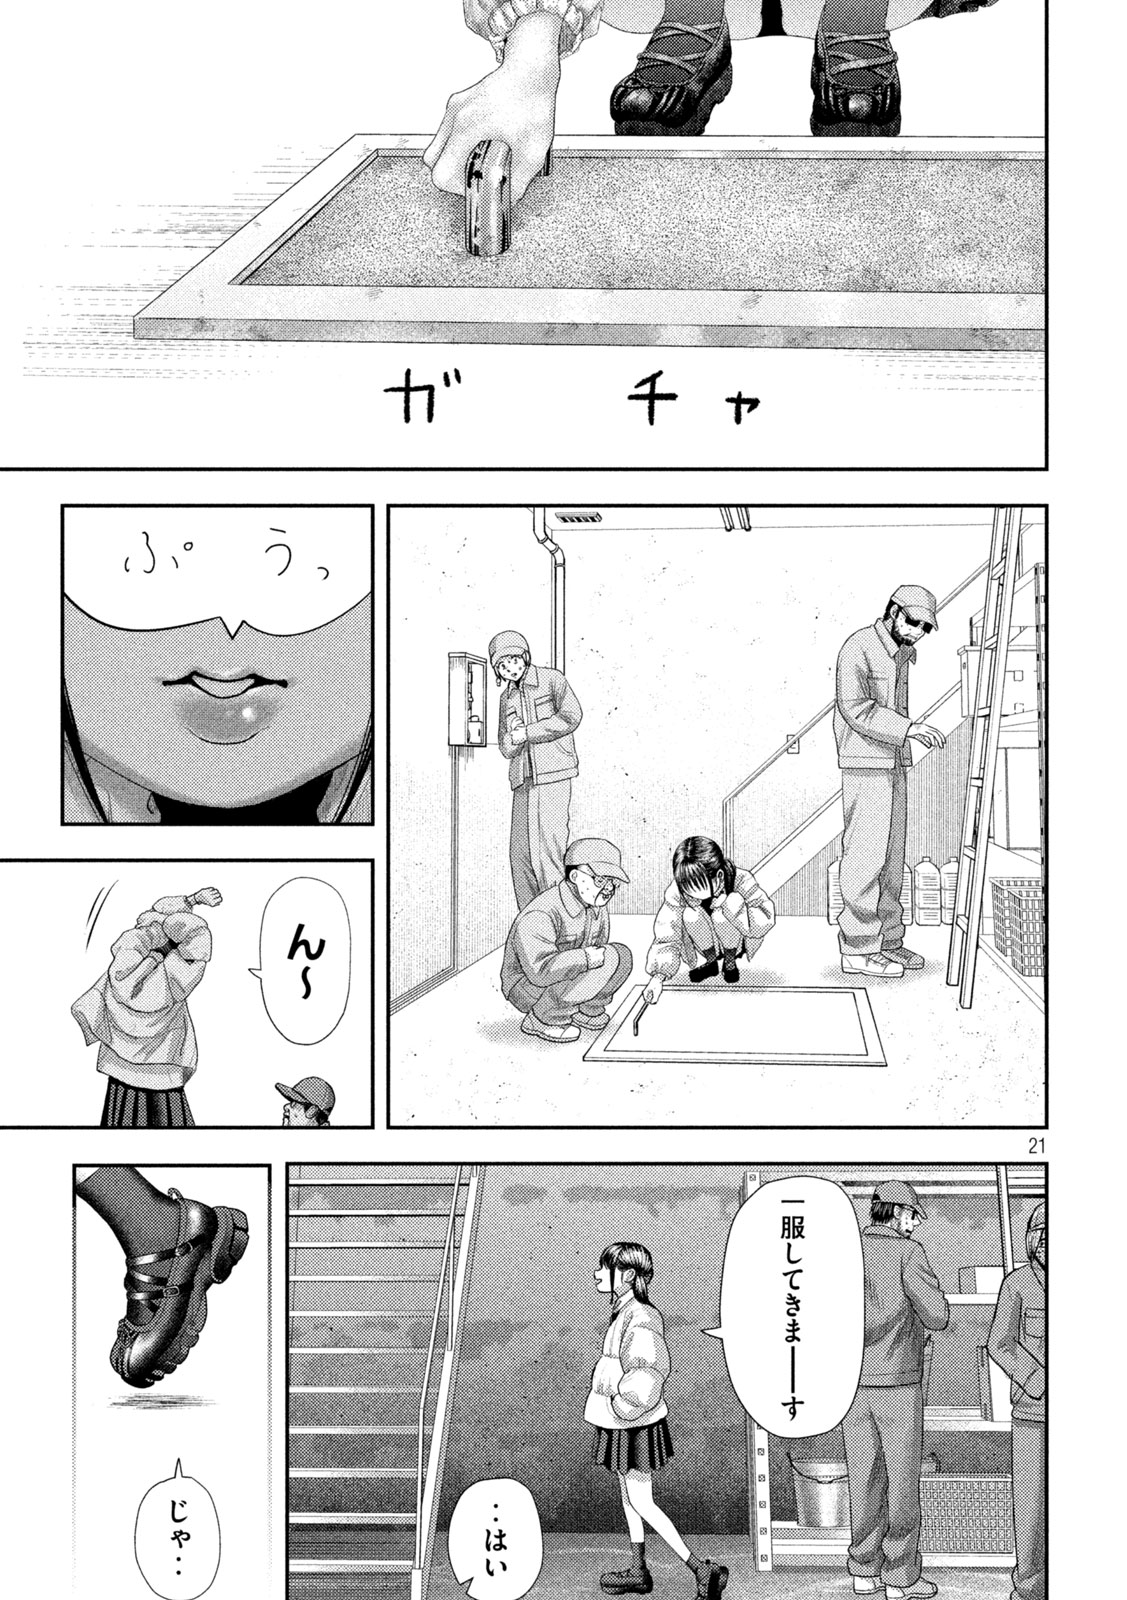 Nezumi no Koi - Chapter 32 - Page 21